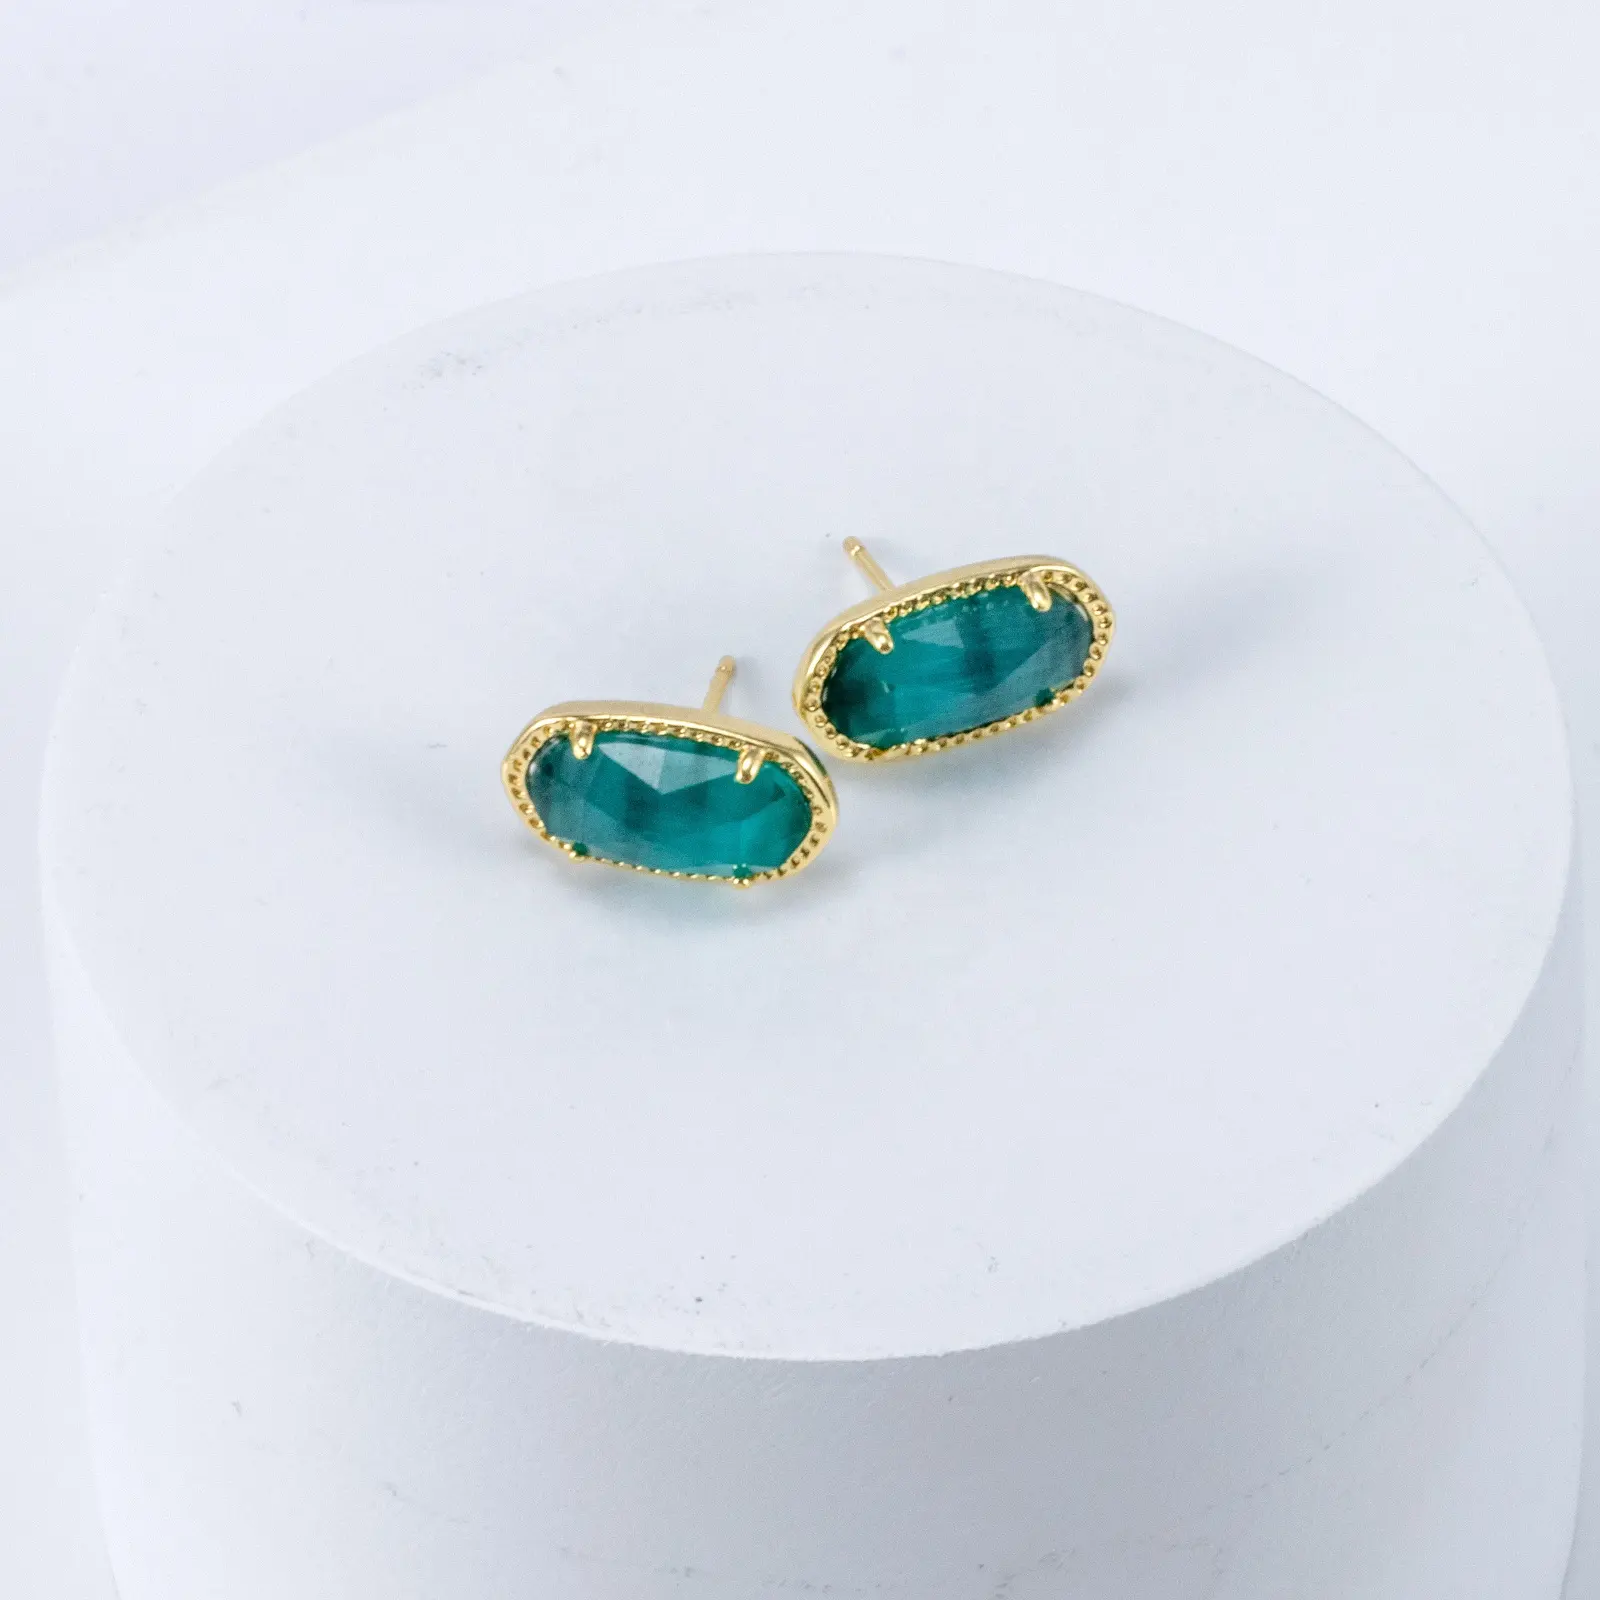 สีฟ้าสีเขียวแมวตาหินต่างหูทองเหลืองสตั๊ด 14 พันทองชุบเครื่องประดับทองเหลืองอัญมณีธรรมชาติต่างหูสตั๊ด